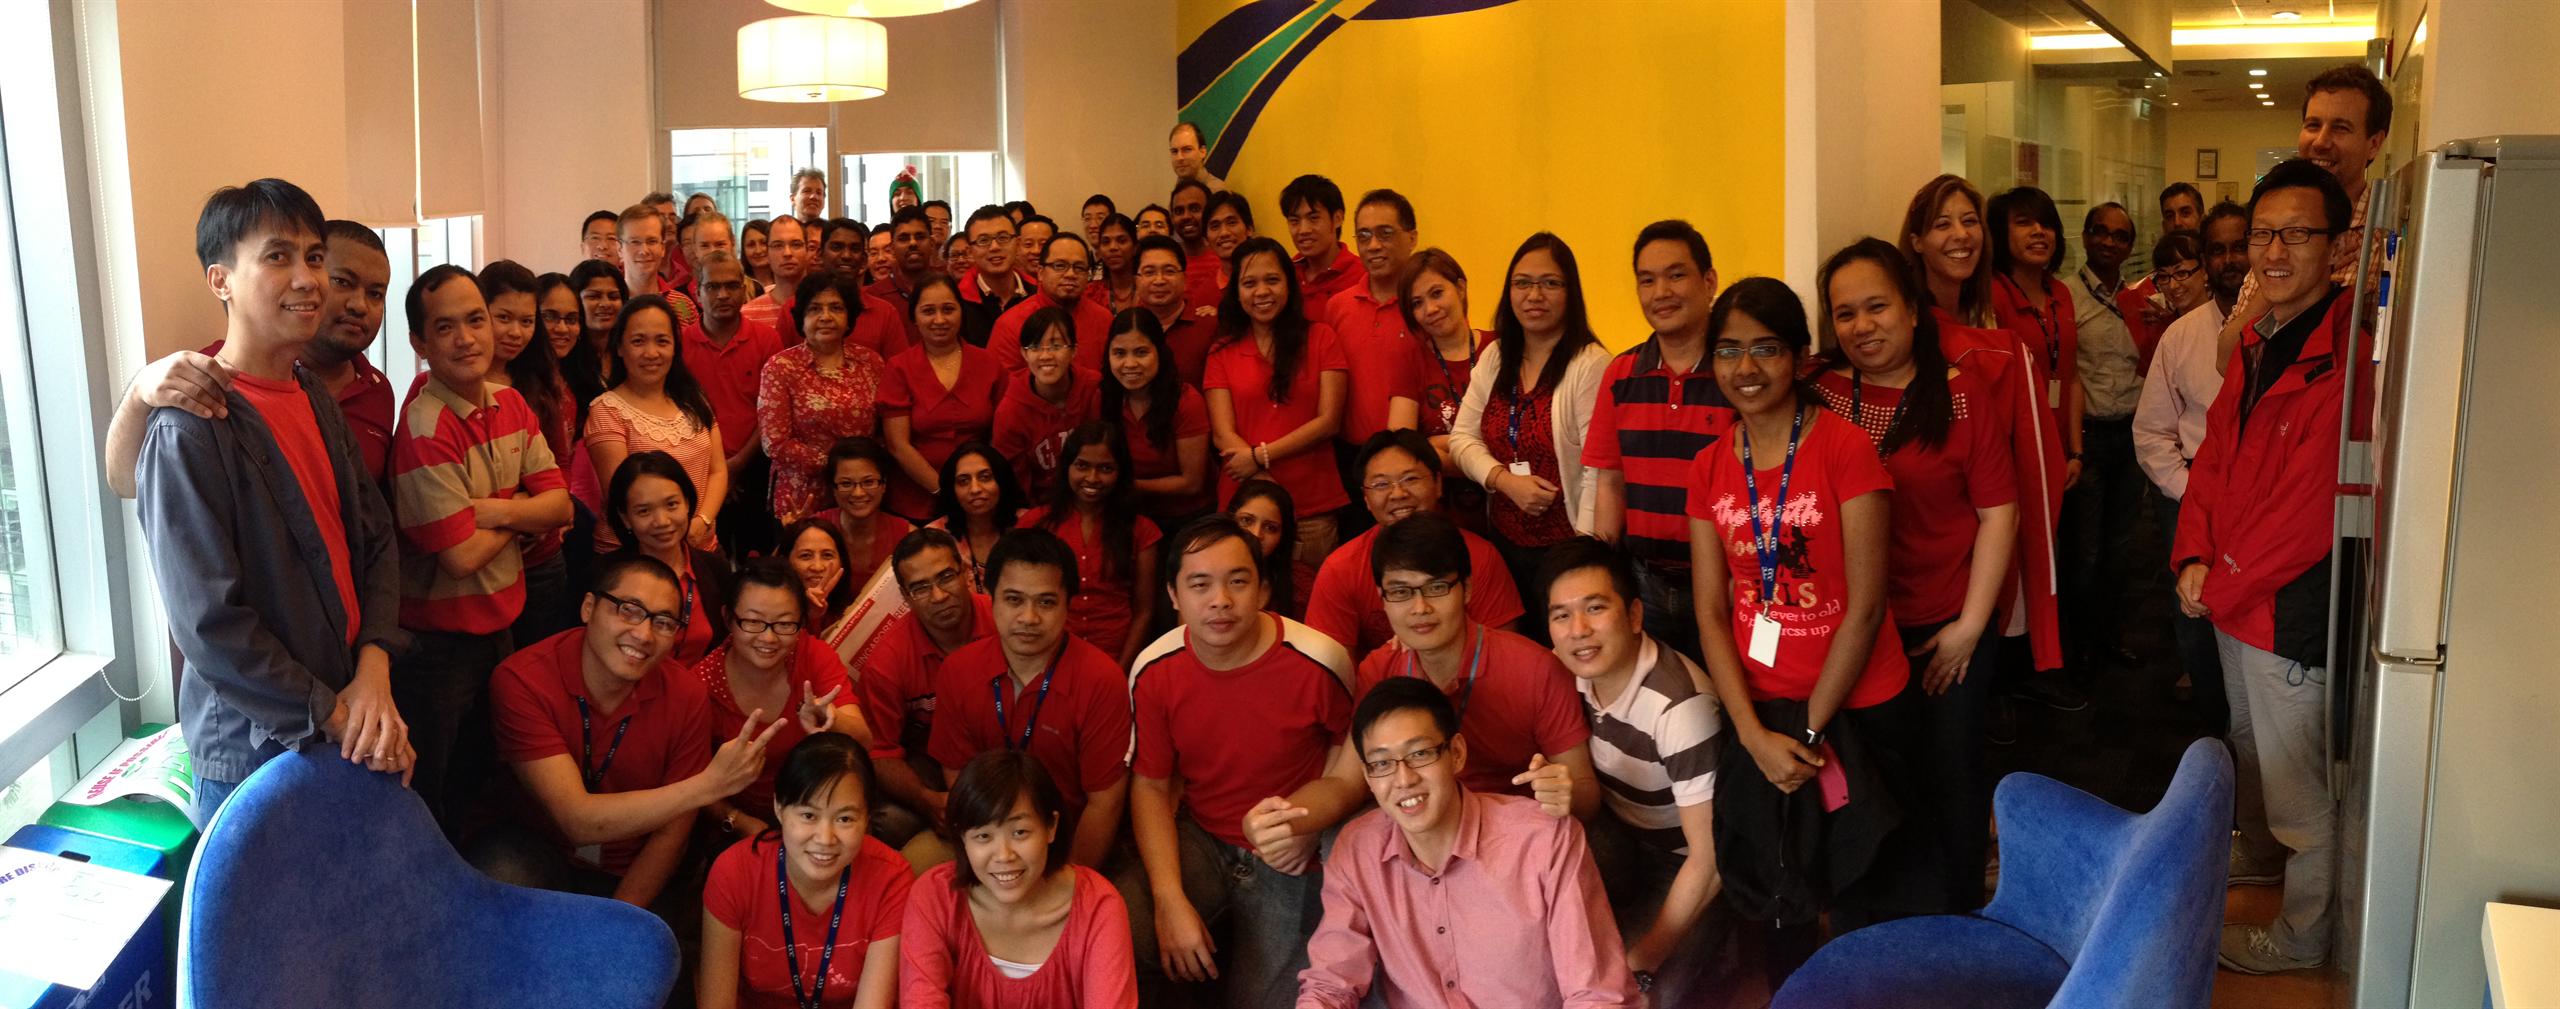 Foto da equipe da Mott MacDonald no escritório de Singapura posando em trajes vermelhos